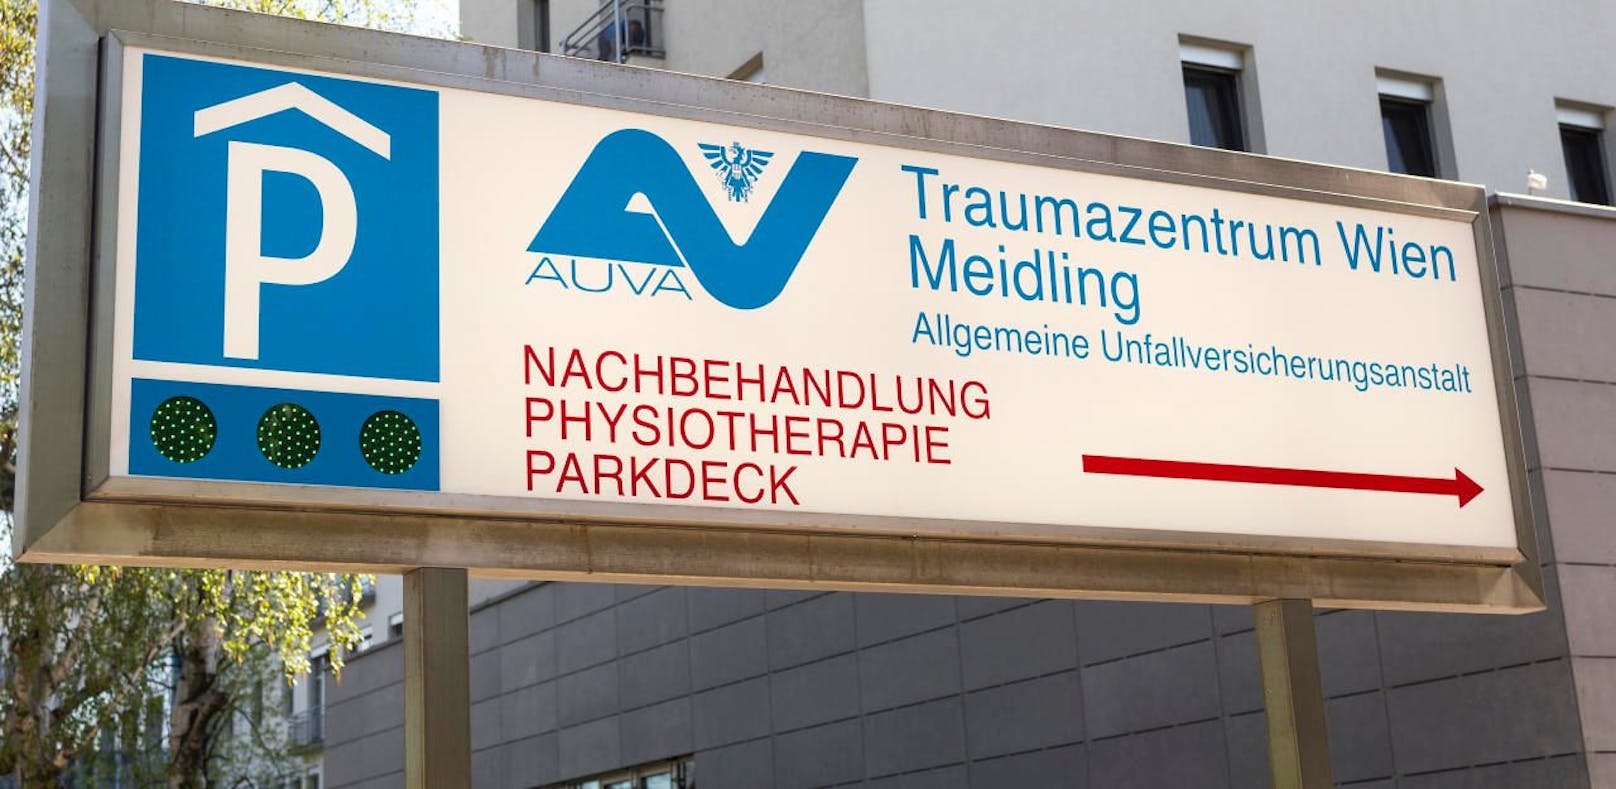 Die AUVA will in zehn Jahren fast eine halbe Milliarde Euro einsparen. Die SPÖ warnt vor einer drohenden Privatisierungswelle und vor der Schließung von Krankenhäusern.